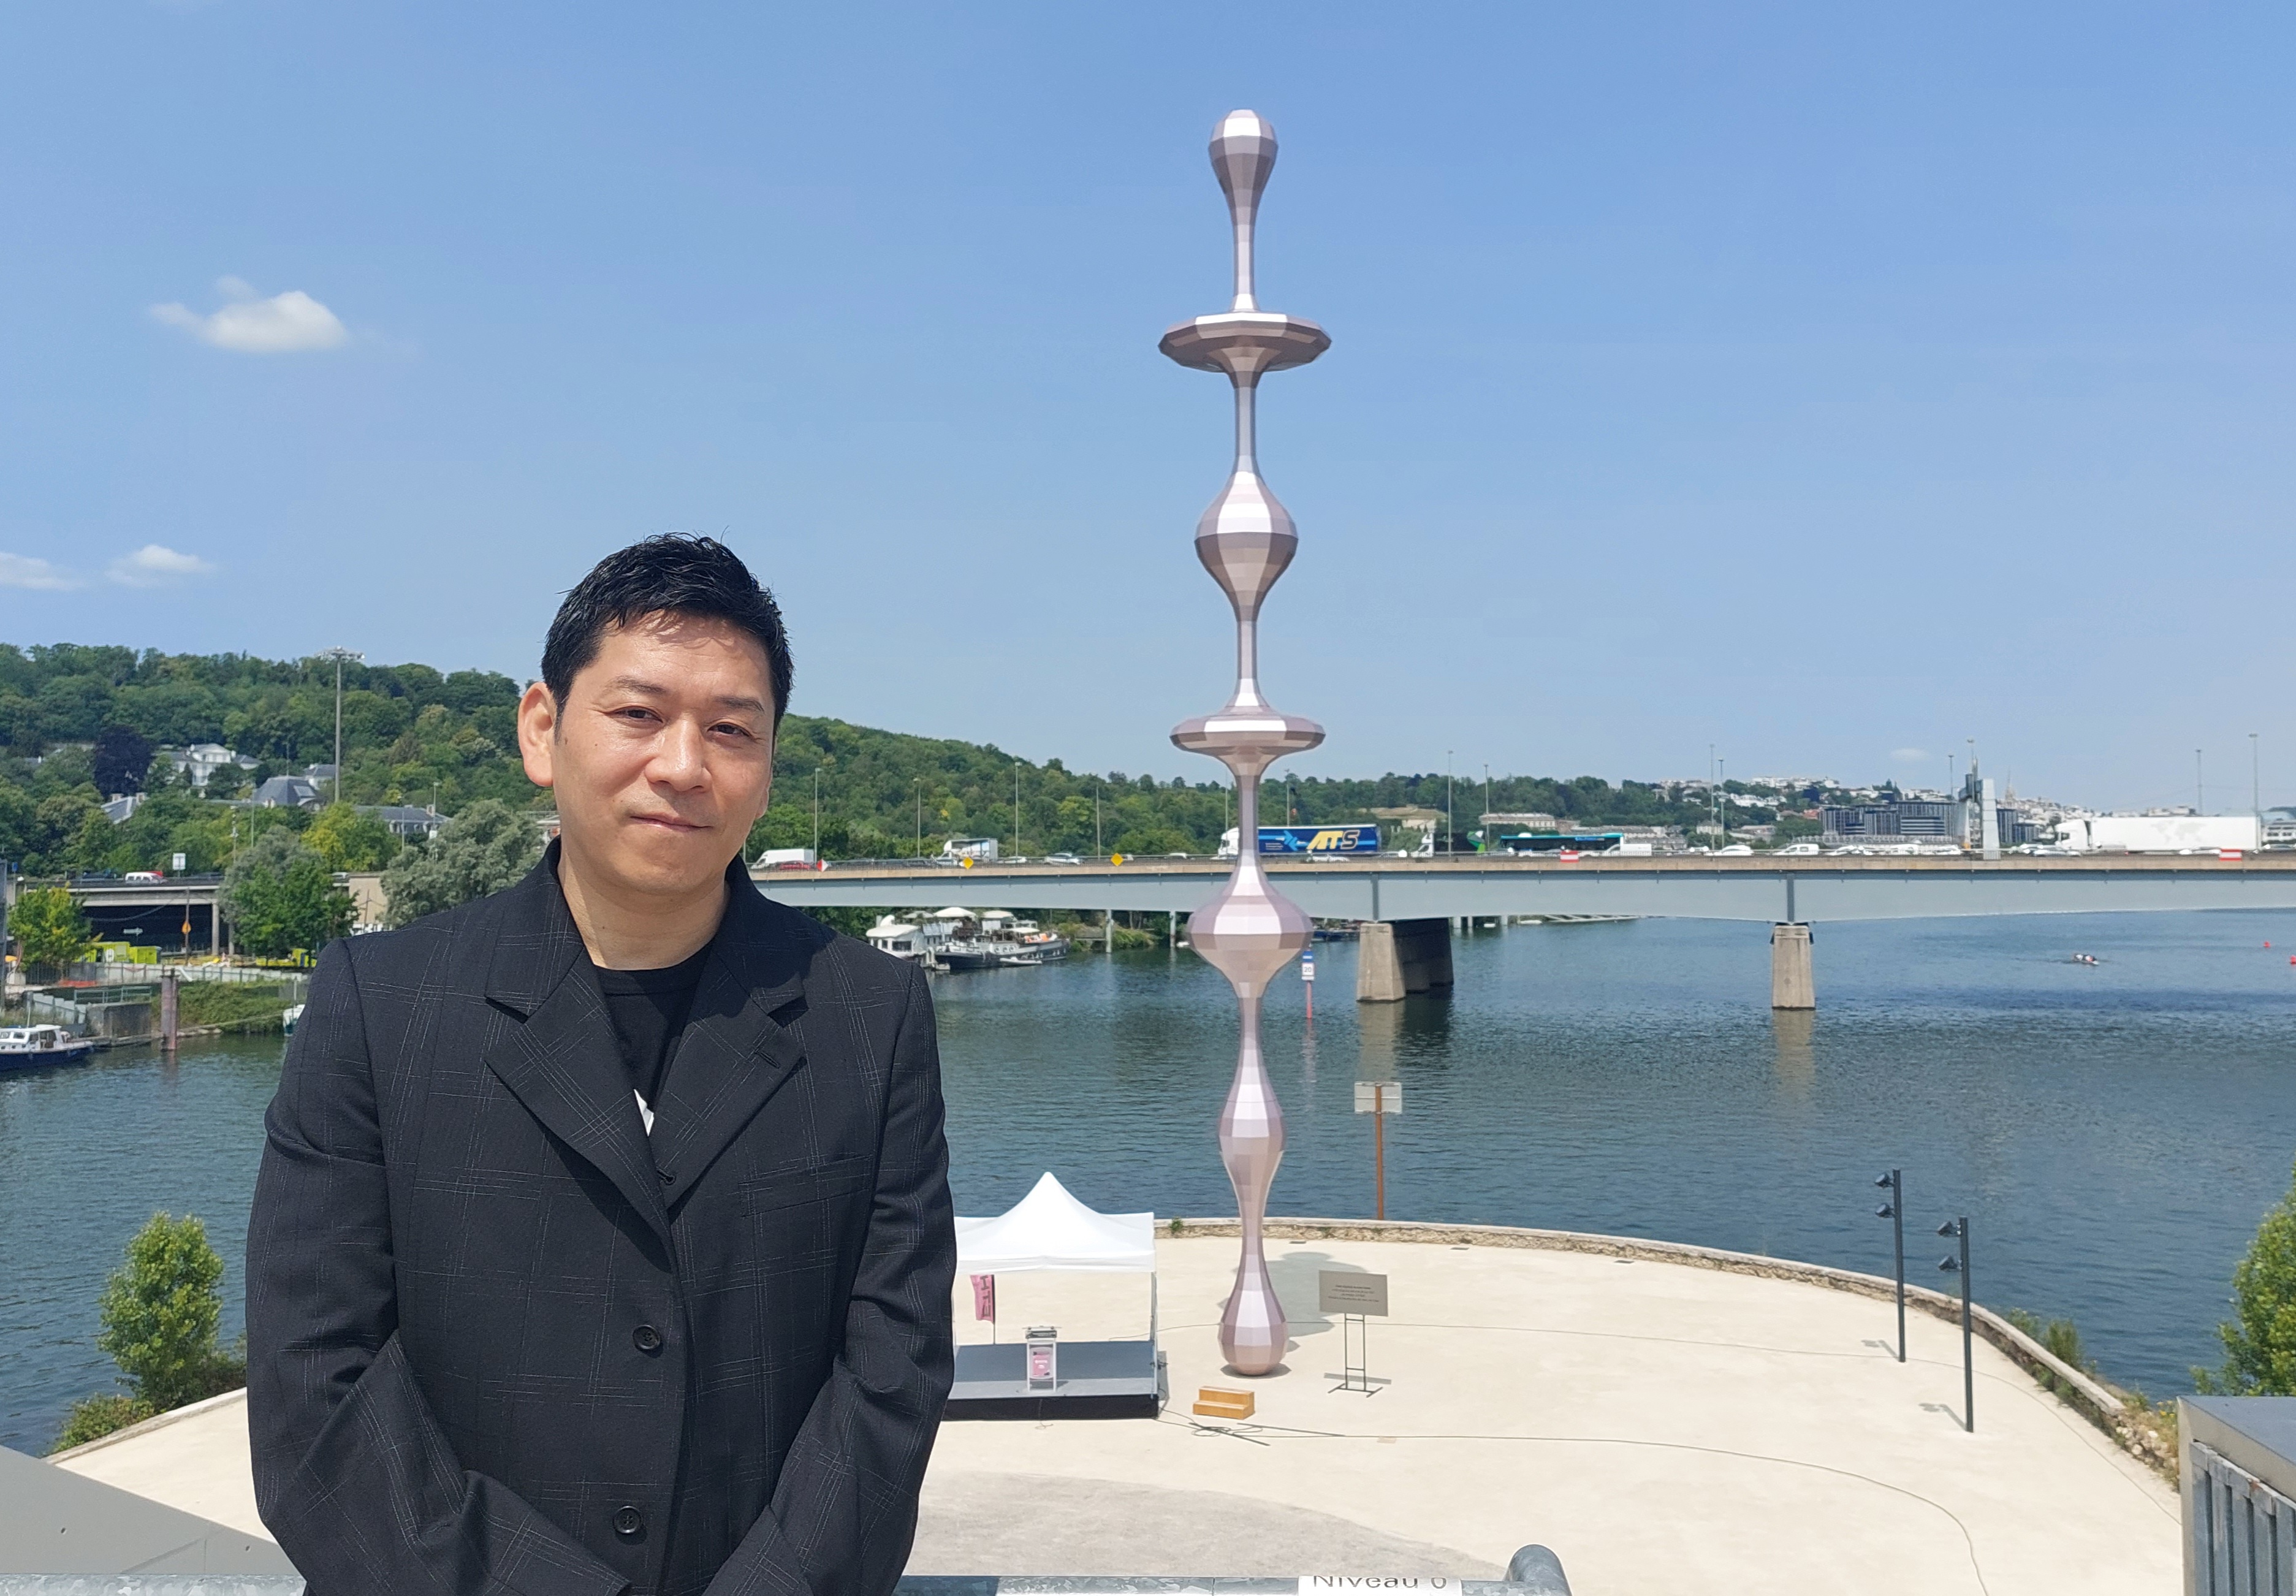 Boulogne-Billancourt, le 28 juin 2023. L'artiste japonais Kohei Nawa devant sa sculpture monumentale "Ether (Egalité)" installée sur la pointe aval de l'Ile Seguin. LP/A.-S.D.